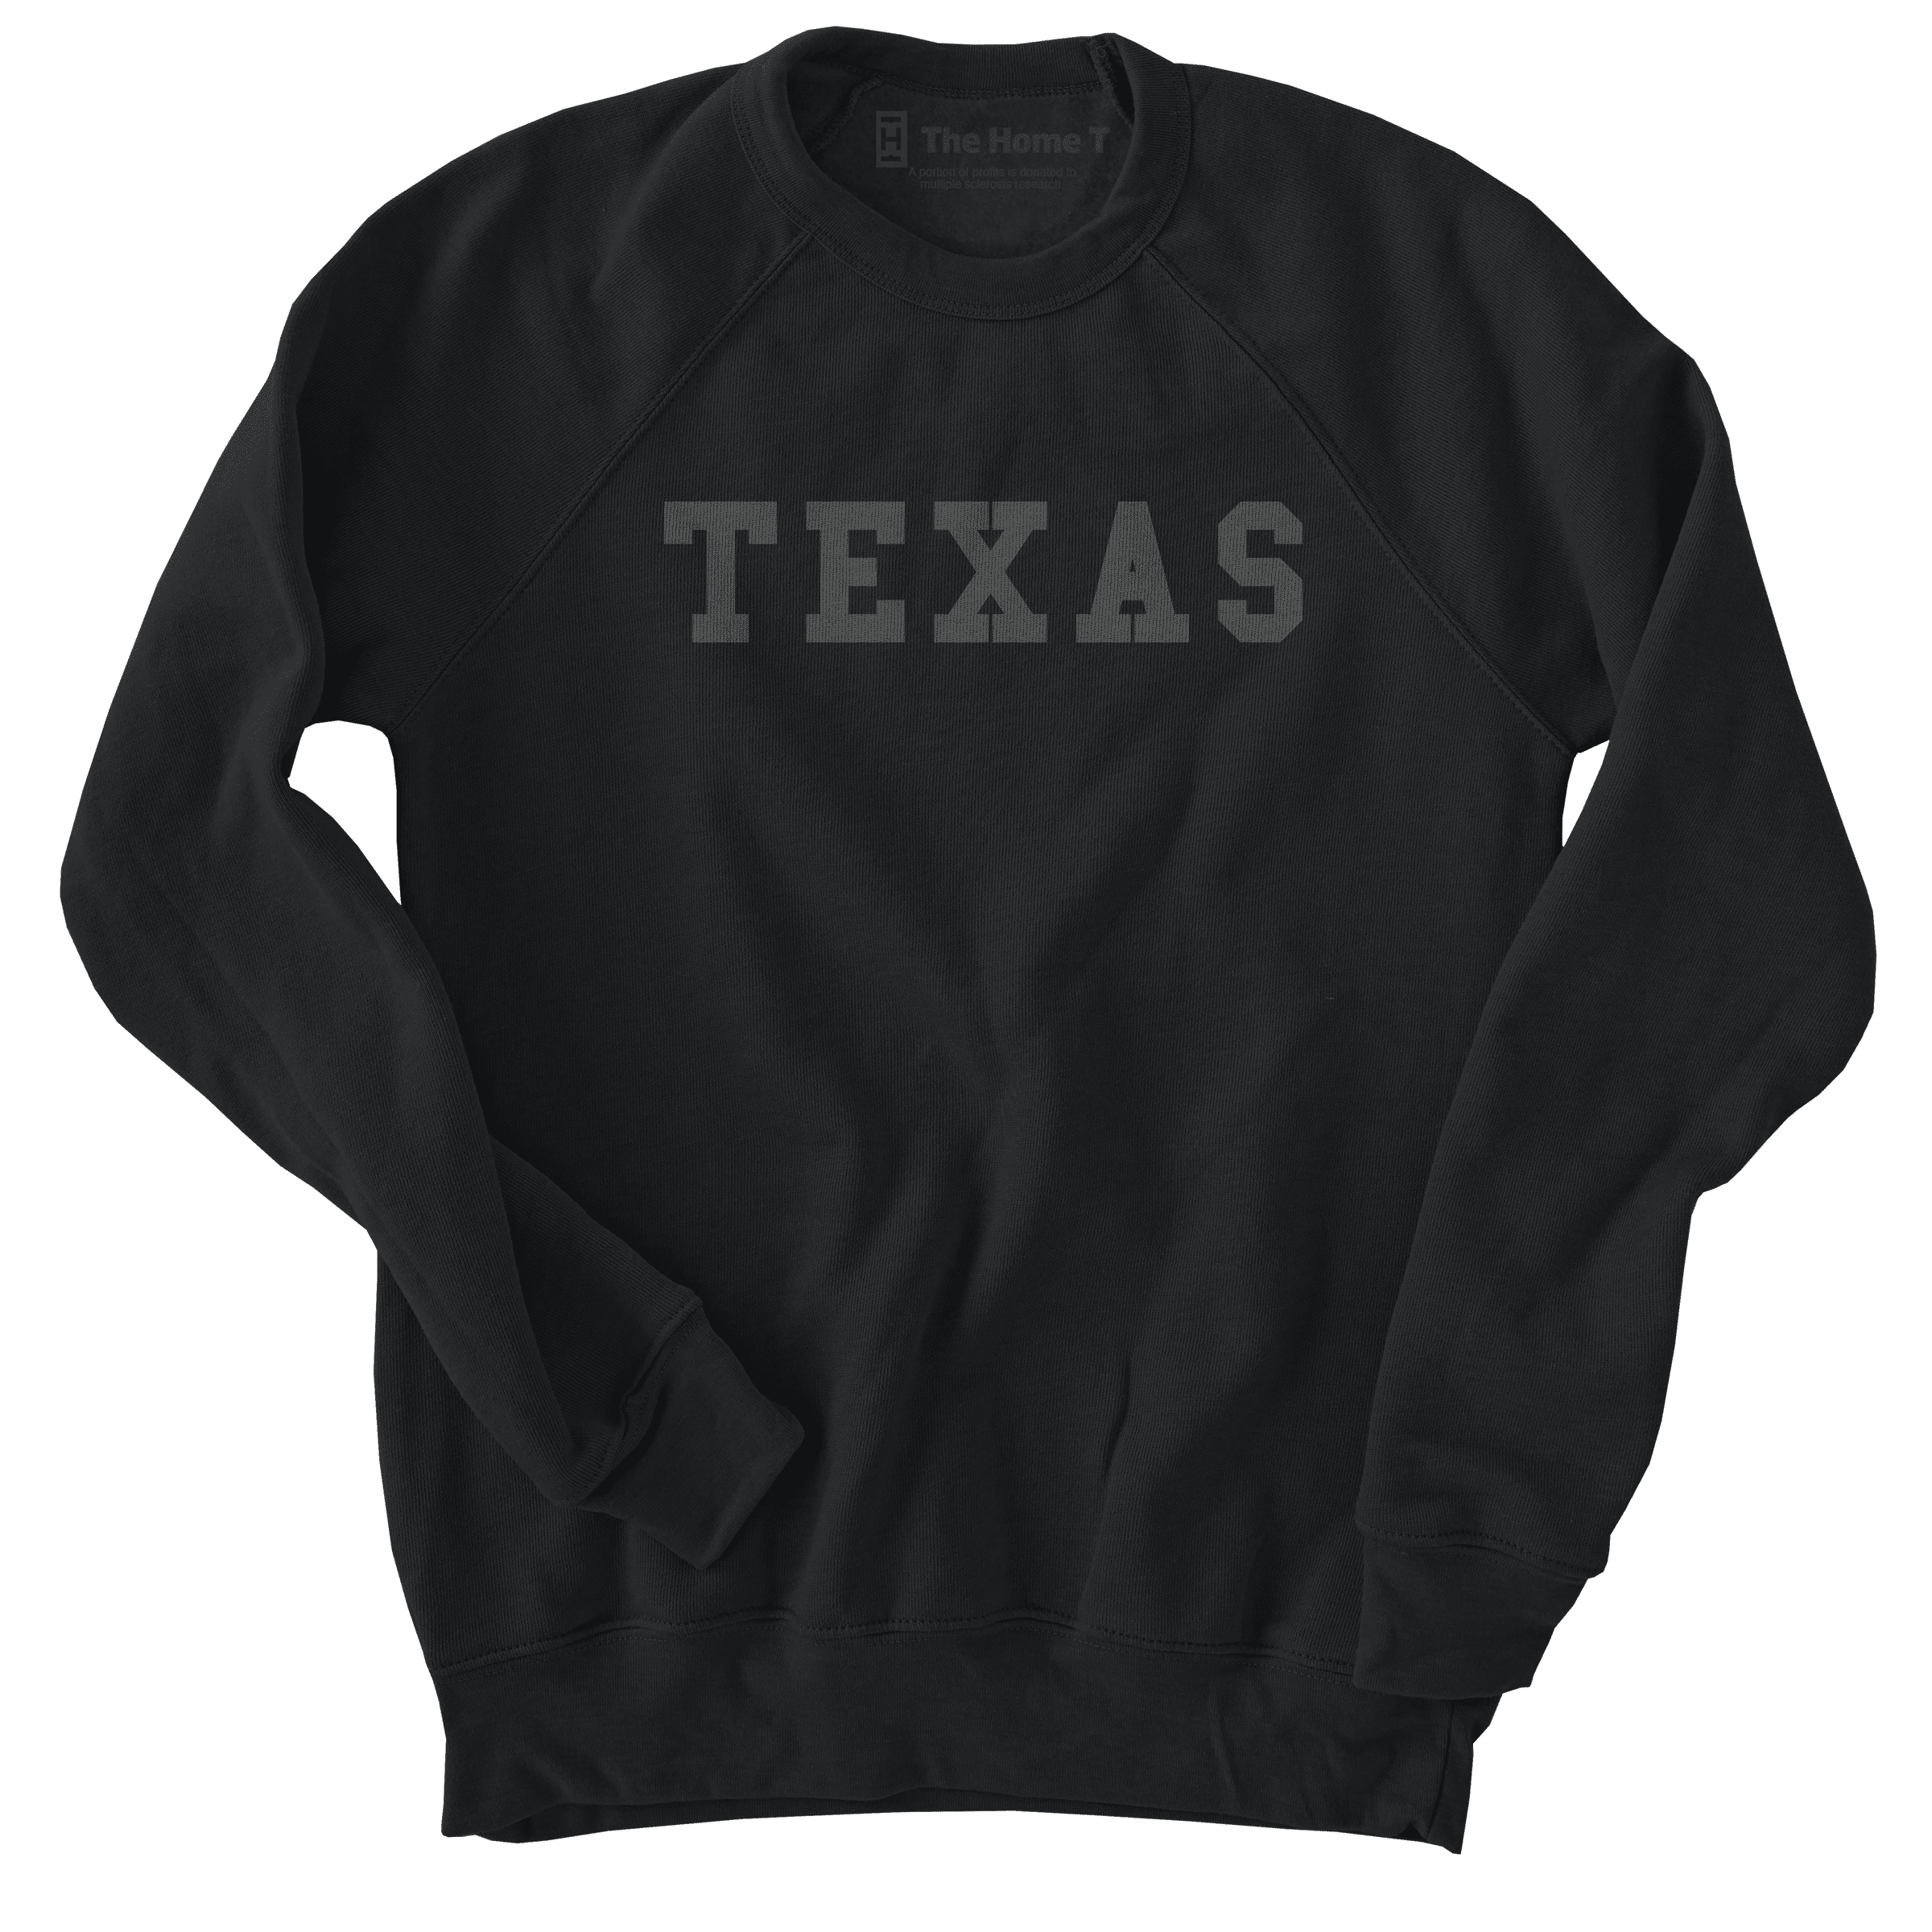 Texas Black on Black